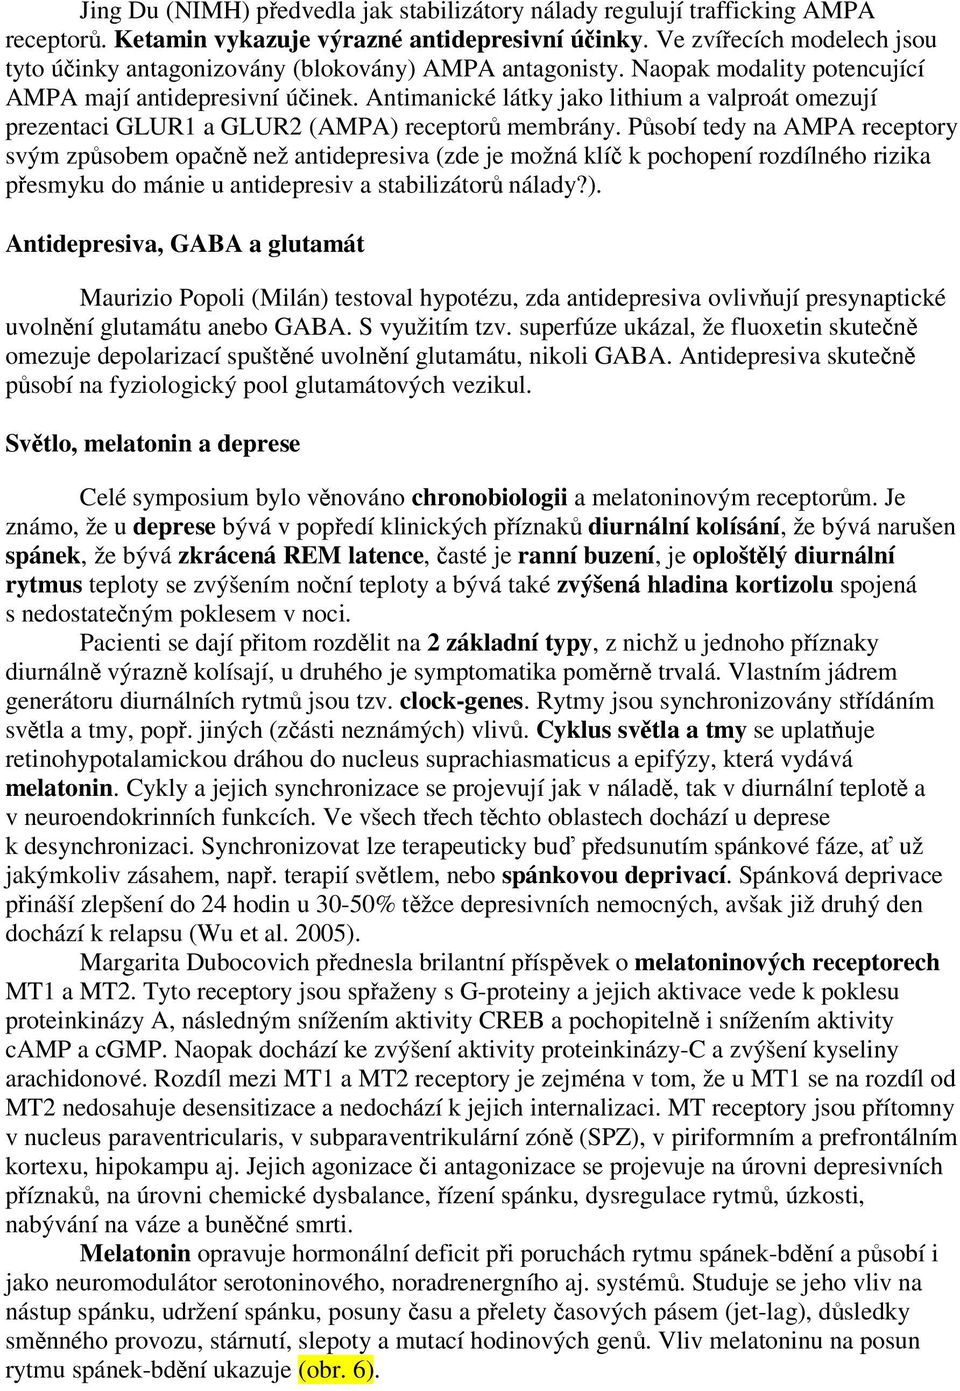 Antimanické látky jako lithium a valproát omezují prezentaci GLUR1 a GLUR2 (AMPA) receptor membrány.